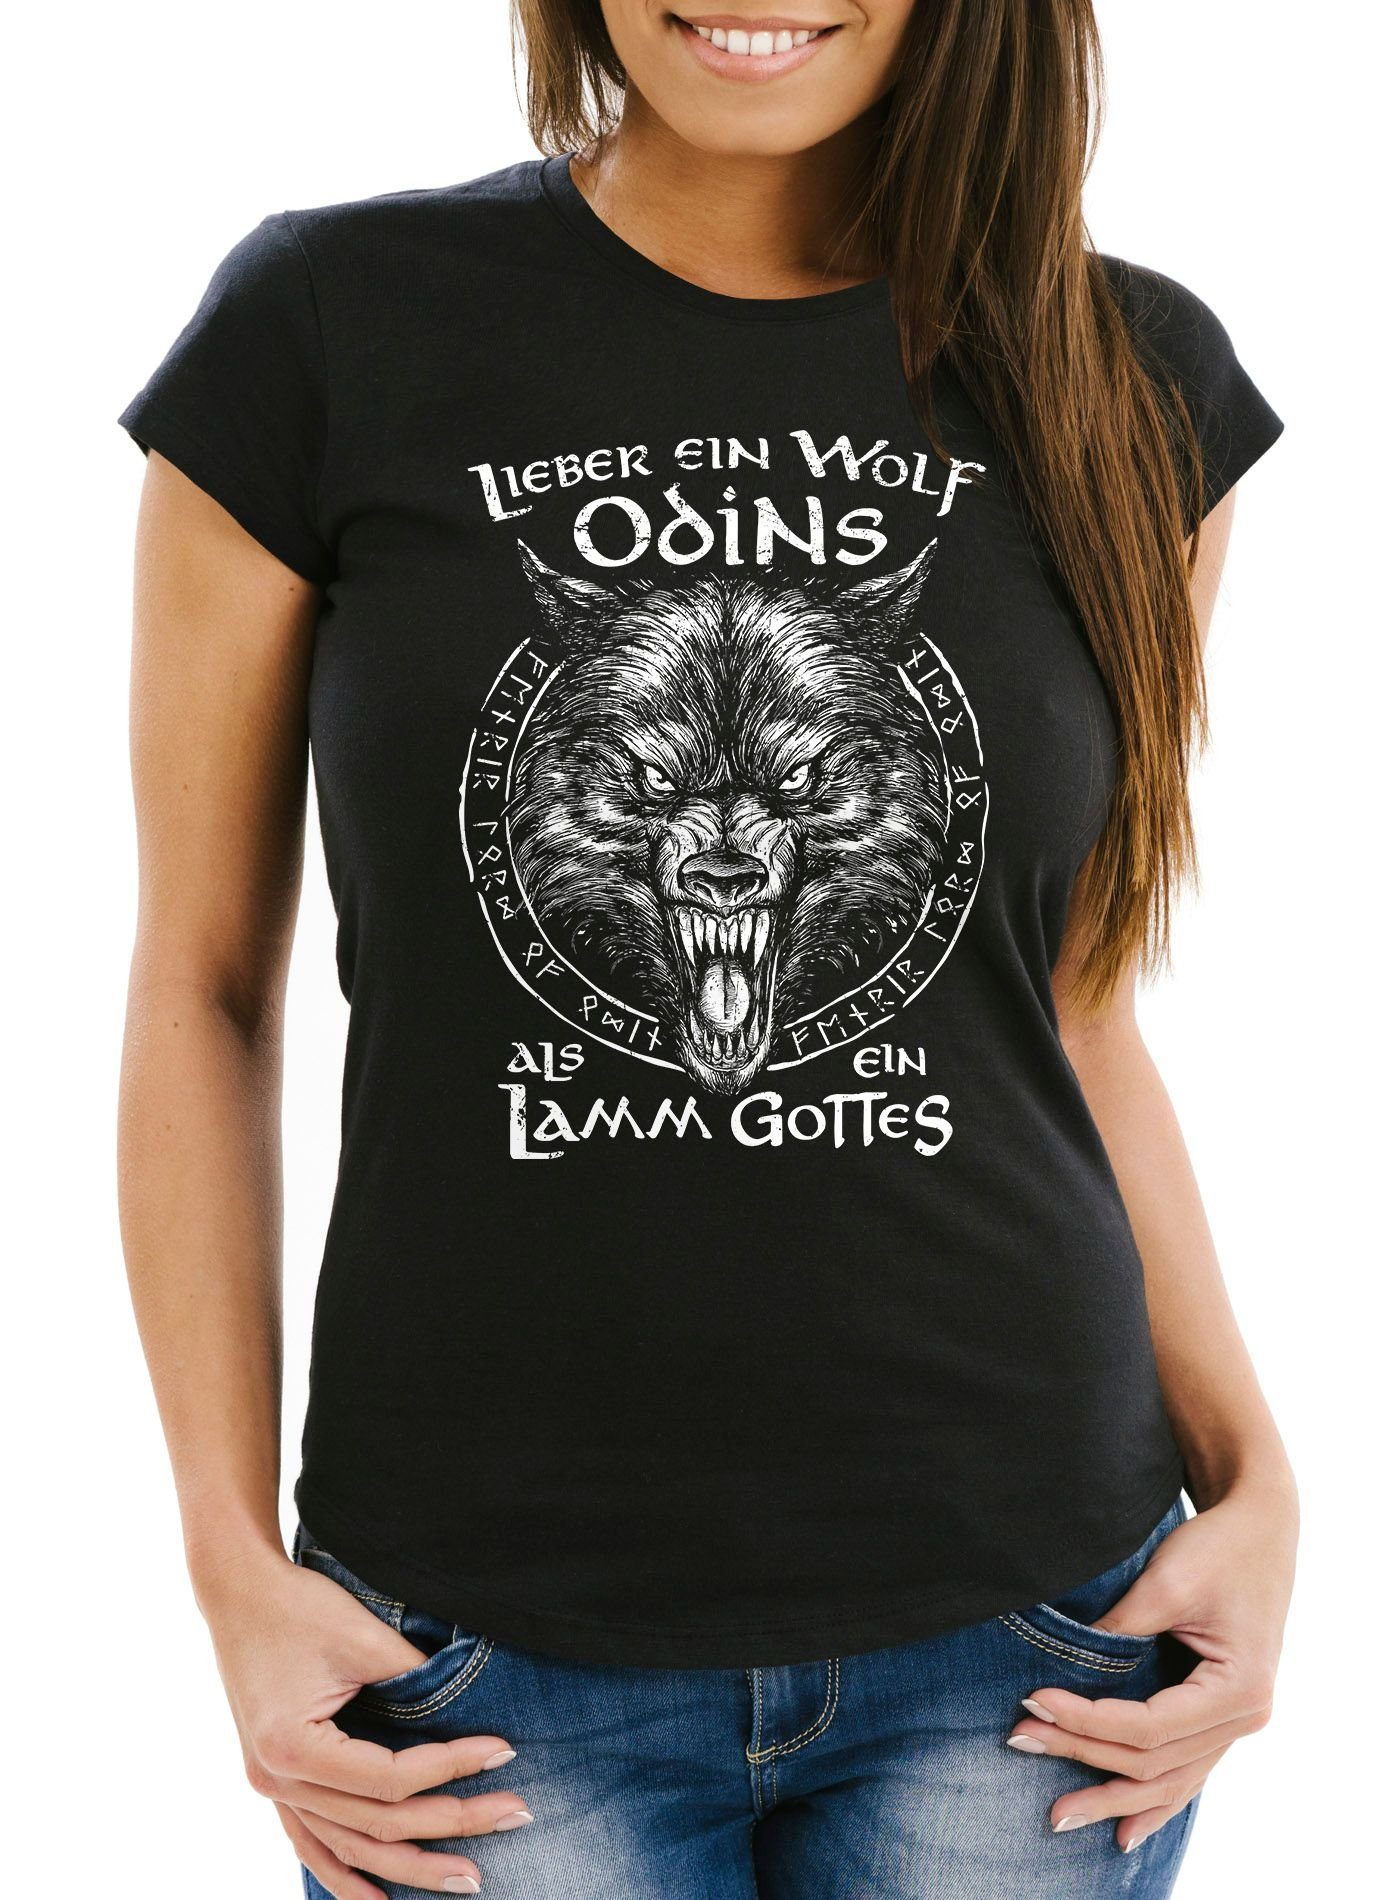 Print-Shirt Lamm Wikinger Wolf Lieber nordische Damen Fashion Spruch Neverless® Mythologie Streetstyle T-Shirt mit Print als ein ein Neverless Odins Gottes